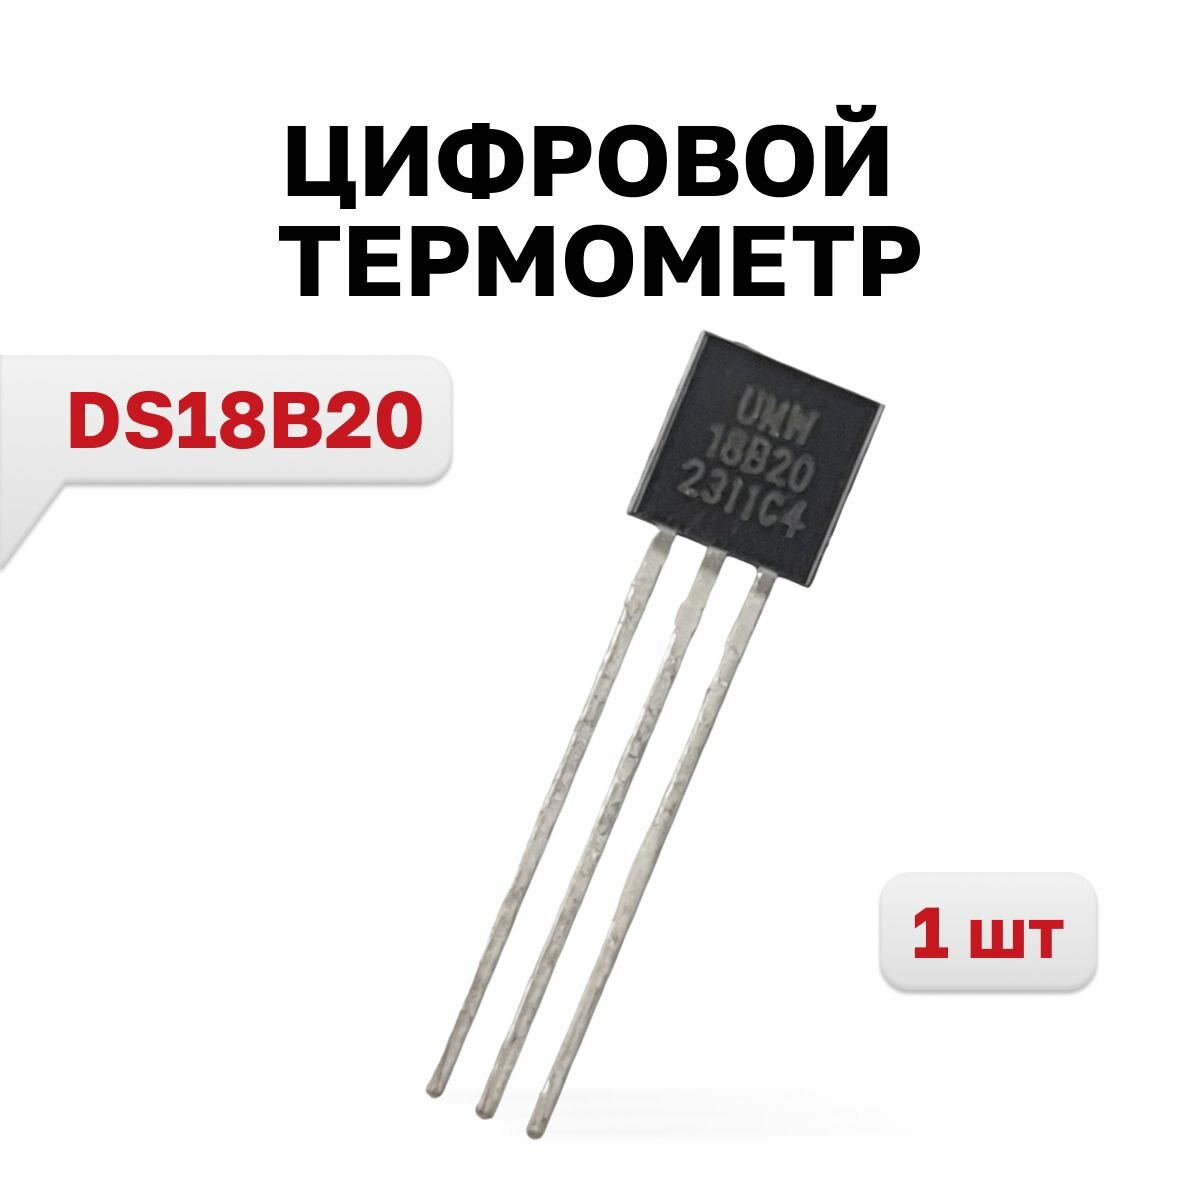 DS18B20 Цифровой термометр (Youtai Semiconductor) 1 шт.